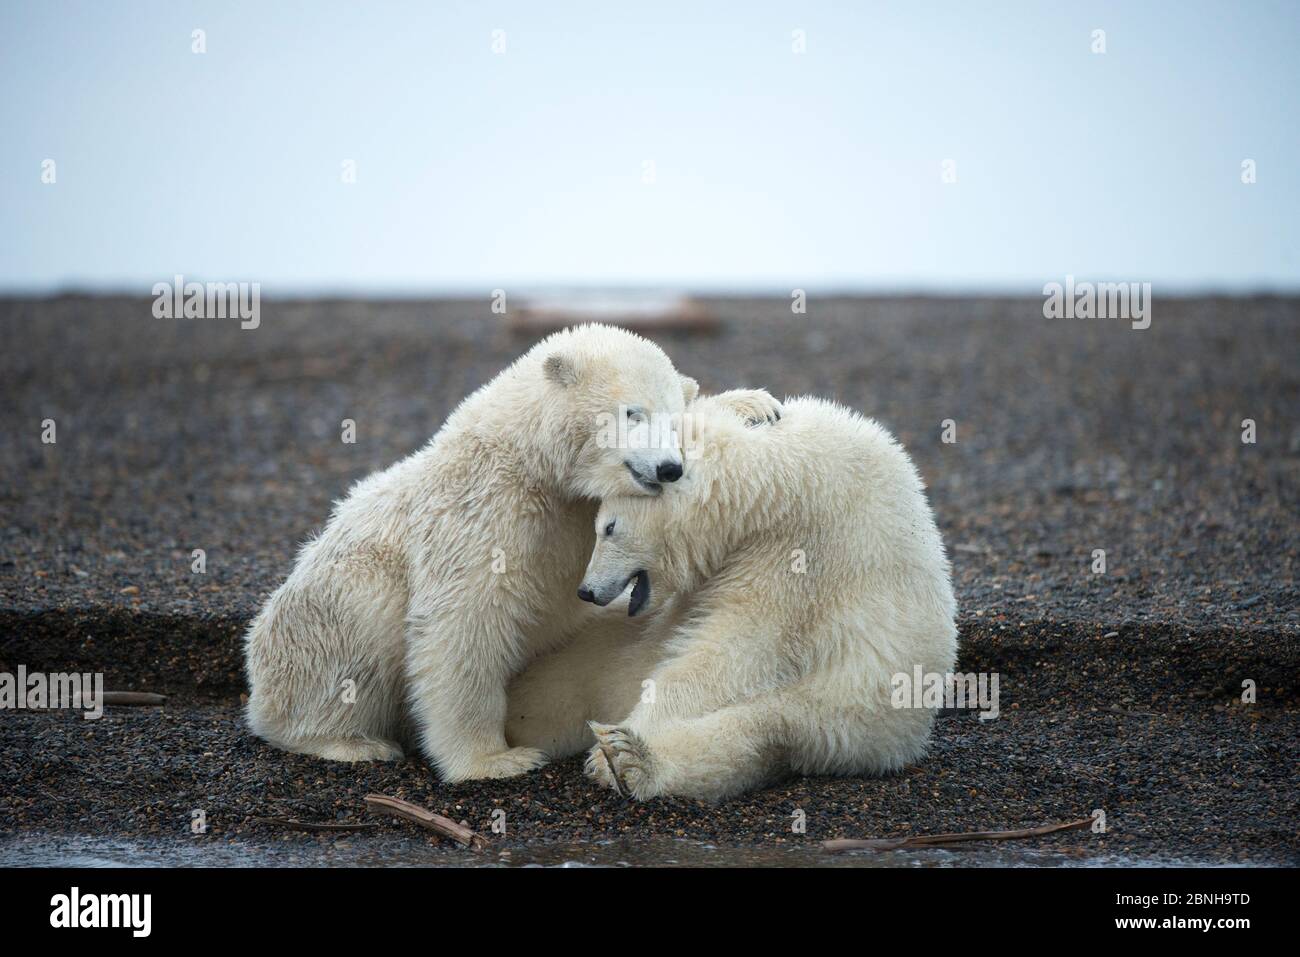 Due cuccioli di orso polare (Ursus maritimus) che giocano, 1002 Area, Arctic National Wildlife Refuge, North Slope, Alaska, USA, ottobre. Specie vulnerabile. Foto Stock